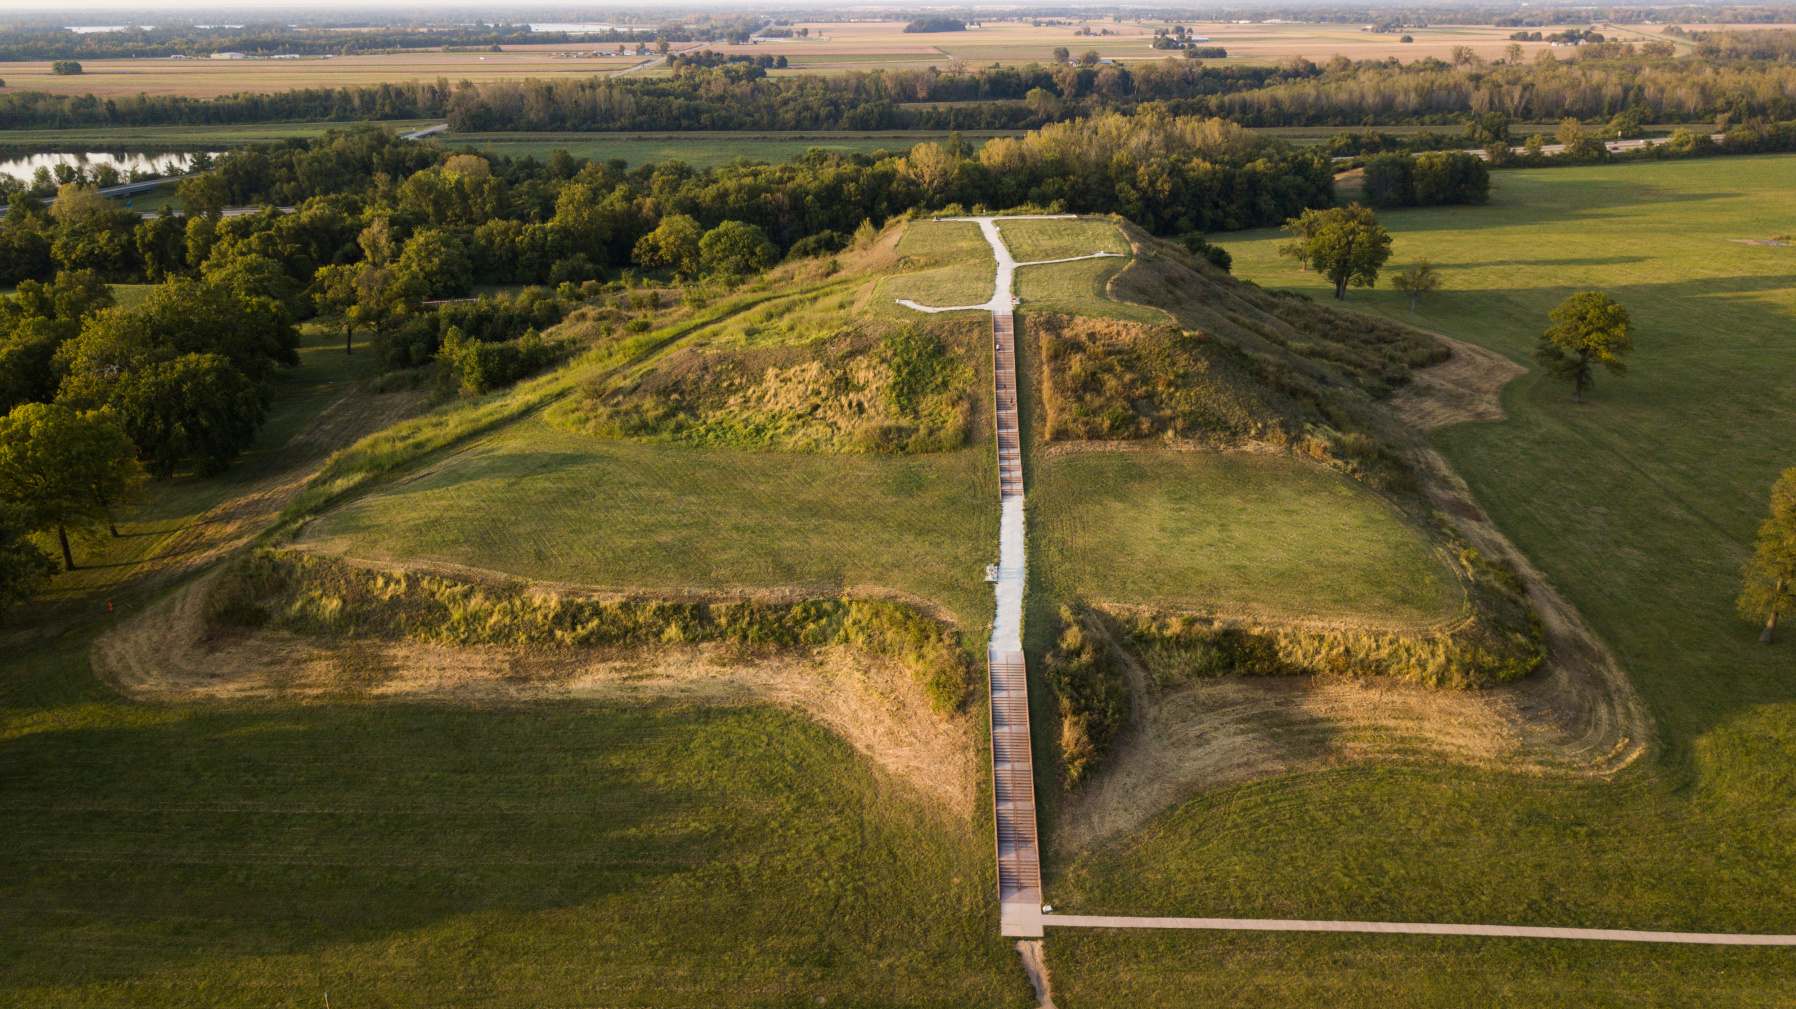 Monks Mound, mis ehitati aastatel 950–1100 e.m.a ja asub Cahokia Moundsi UNESCO maailmapärandi nimistusse kuuluvas kohas Collinsville'i lähedal Illinoisi osariigis, on suurim Kolumbuse-eelne mullatöö Ameerikas Mesoameerikast põhja pool. Mitmeid Kolumbuse-eelseid kultuure nimetatakse ühiselt "küngaste ehitajateks".